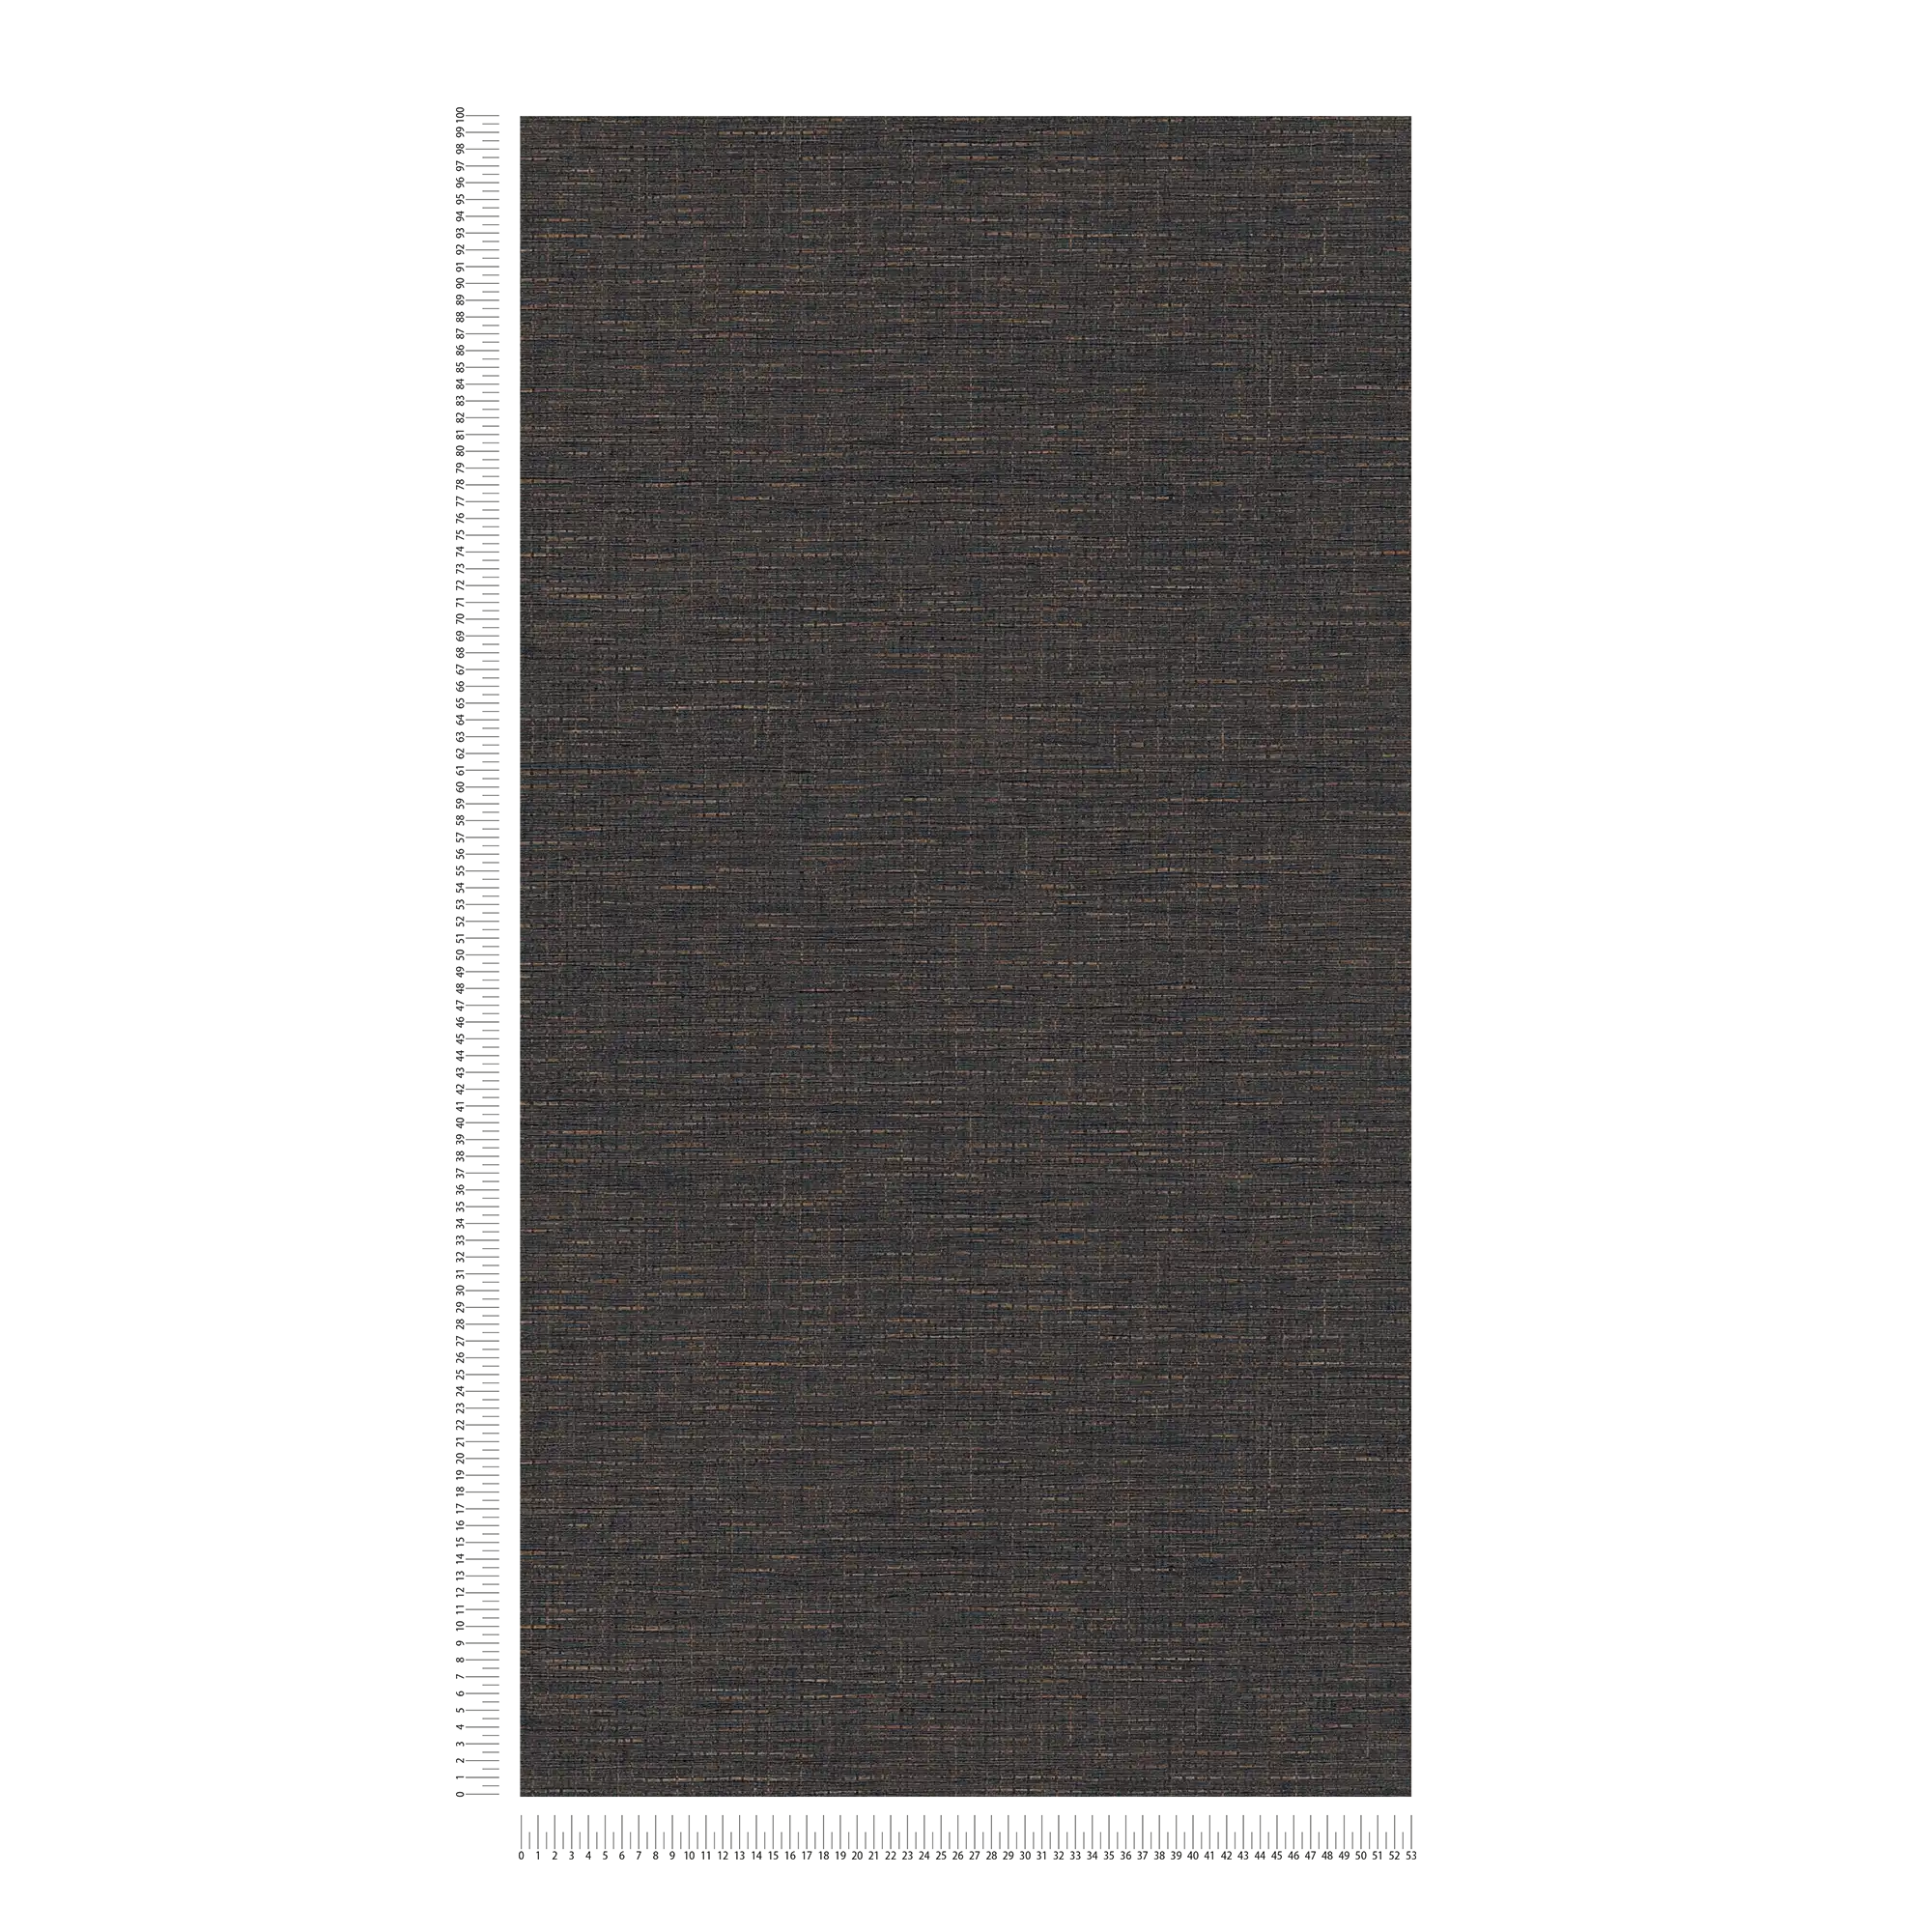             Papier peint marron foncé avec motif raphia, mat & structuré
        